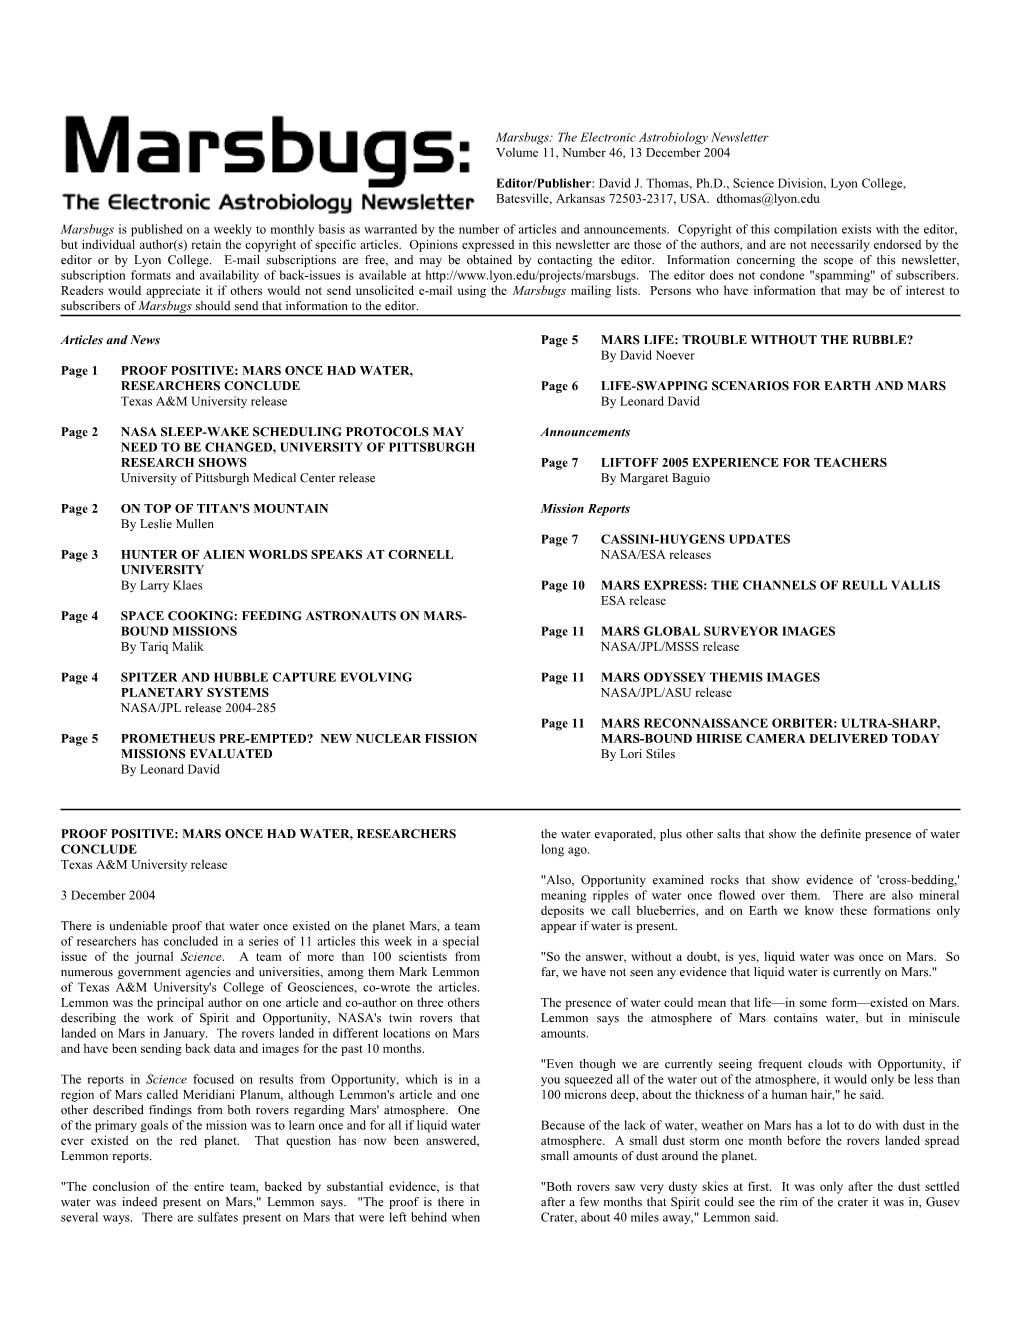 Marsbugs Vol. 11, No. 46